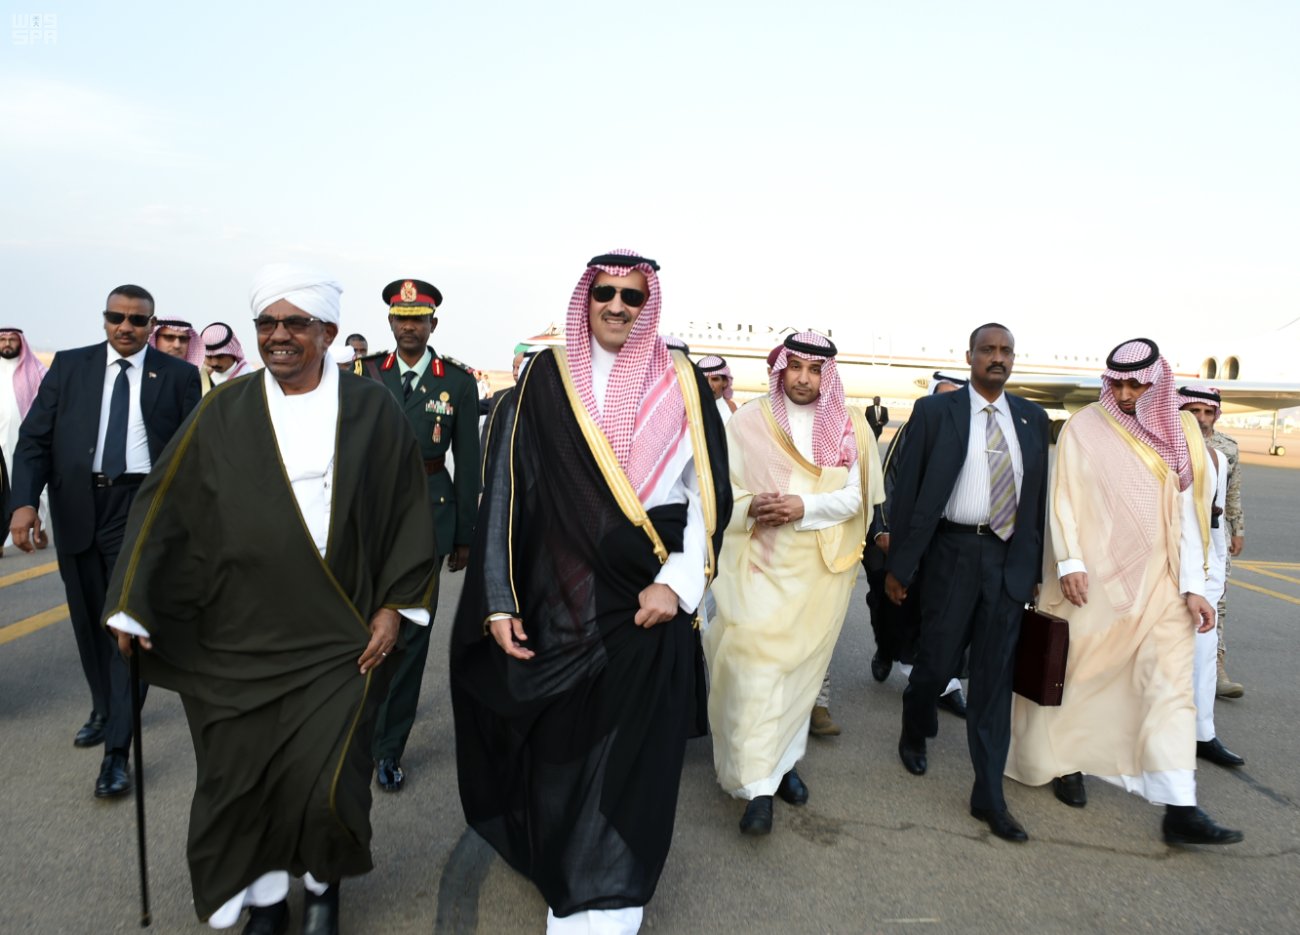 الرئيس السوداني يصل إلى المدينة لزيارة المسجد النبوي